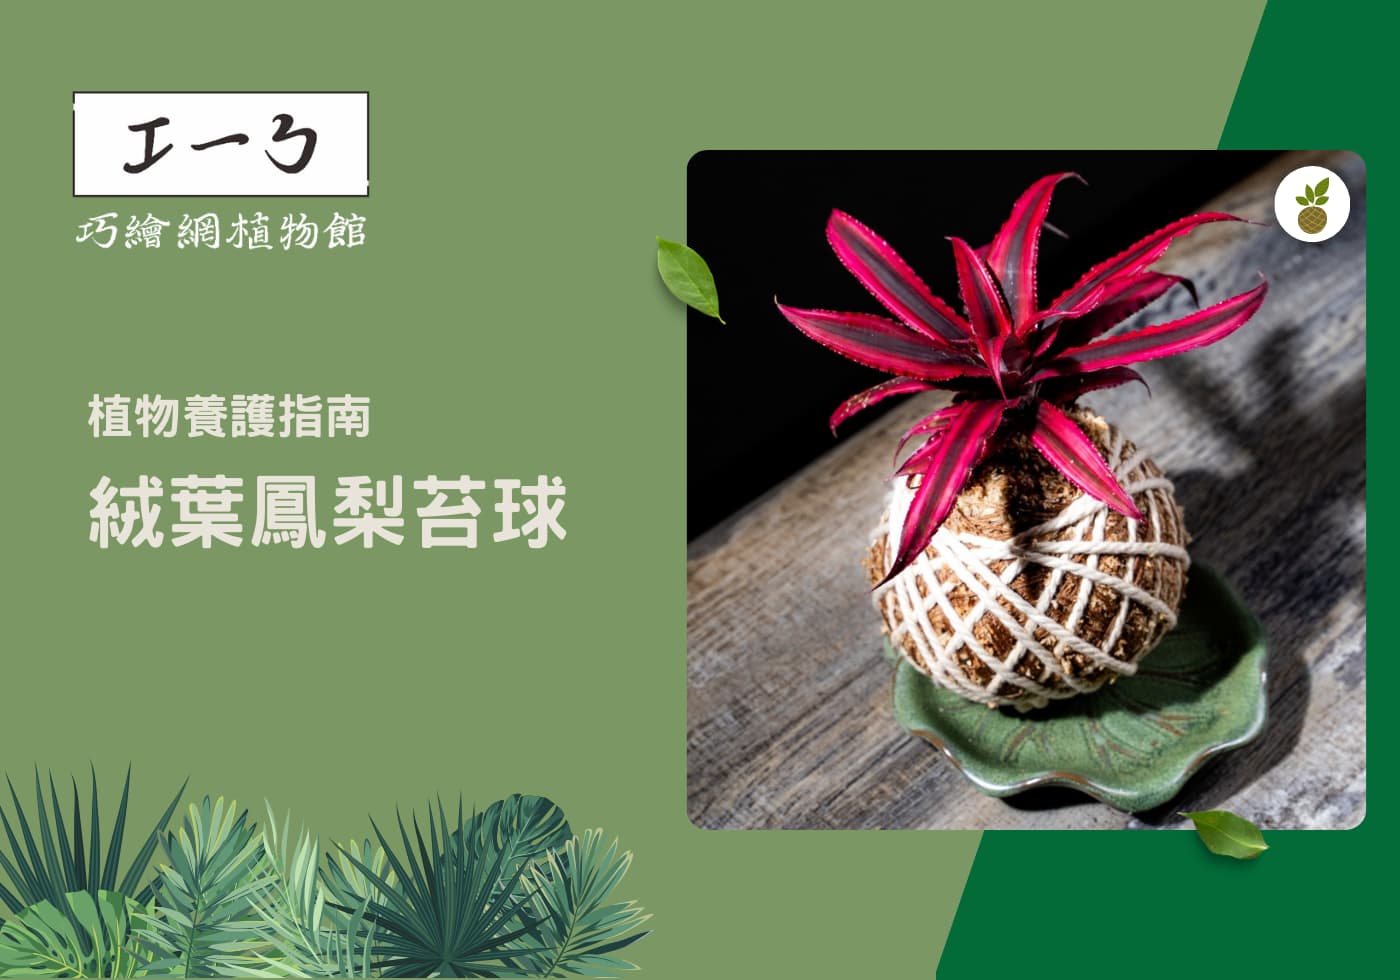 您目前正在查看 絨葉鳳梨養護全指南：從栽培到裝飾的專業秘訣